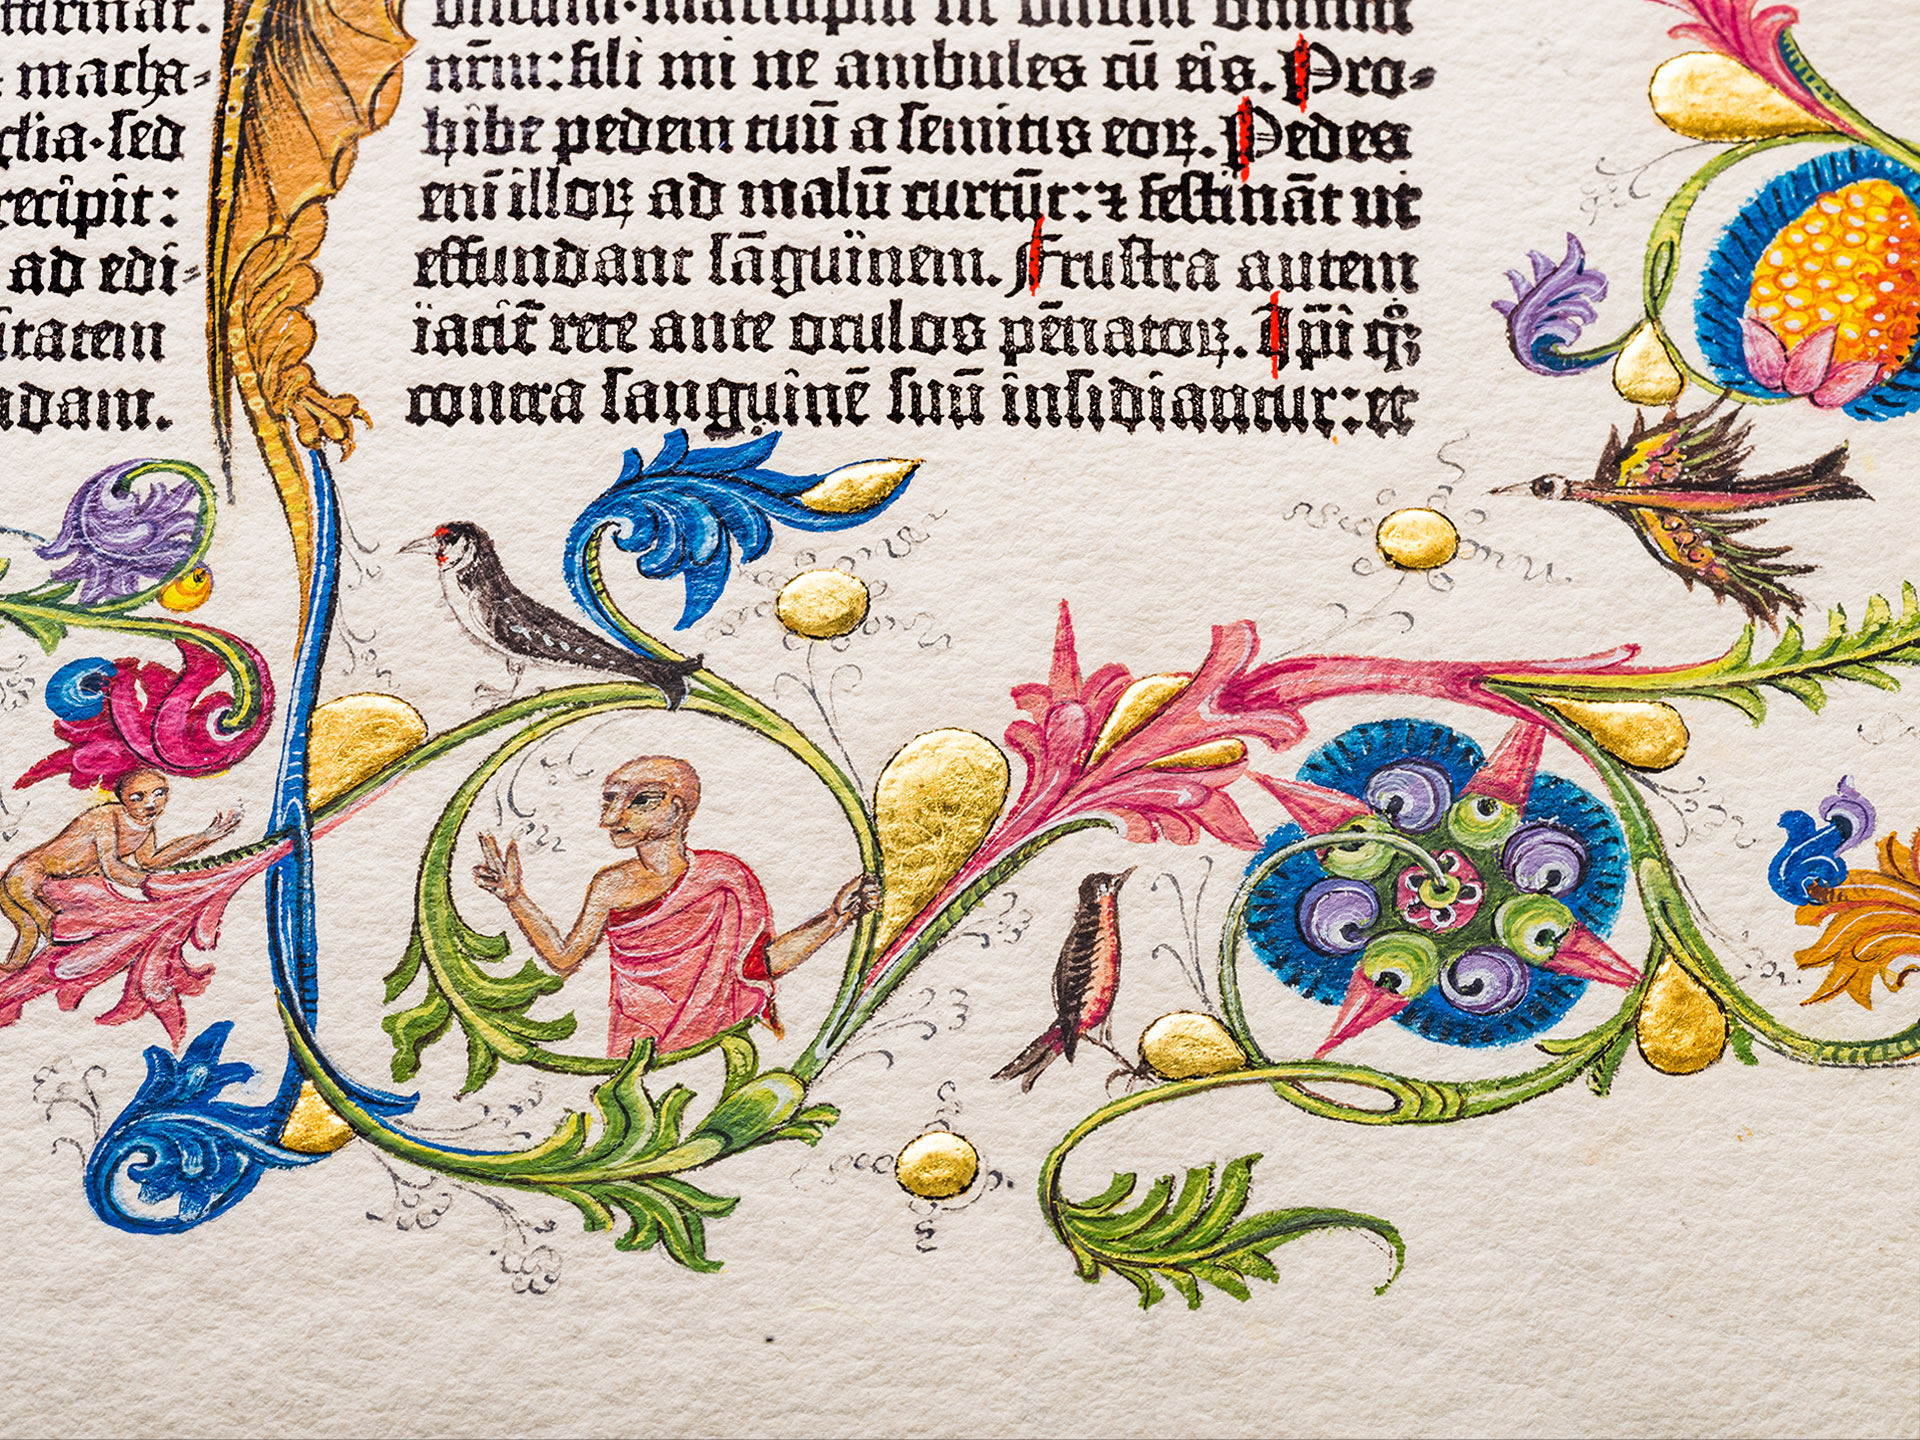 Das Buch der Sprichwörter. Prachtseite Berliner Gutenberg-Bibel